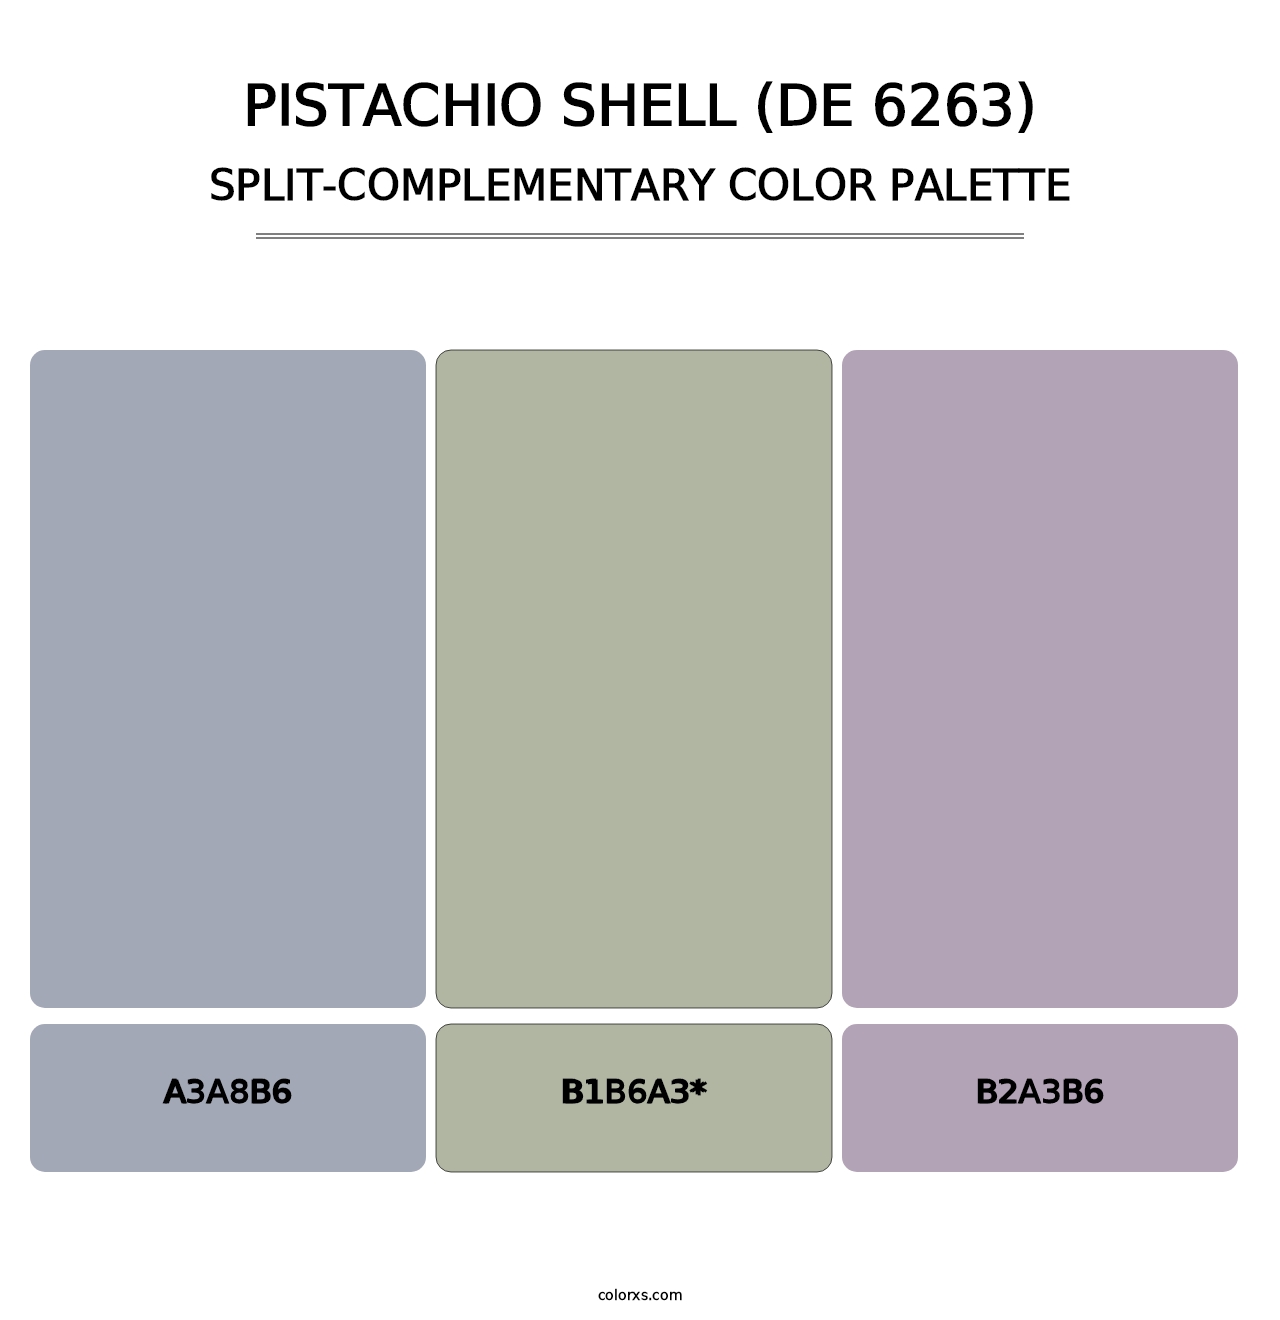 Pistachio Shell (DE 6263) - Split-Complementary Color Palette